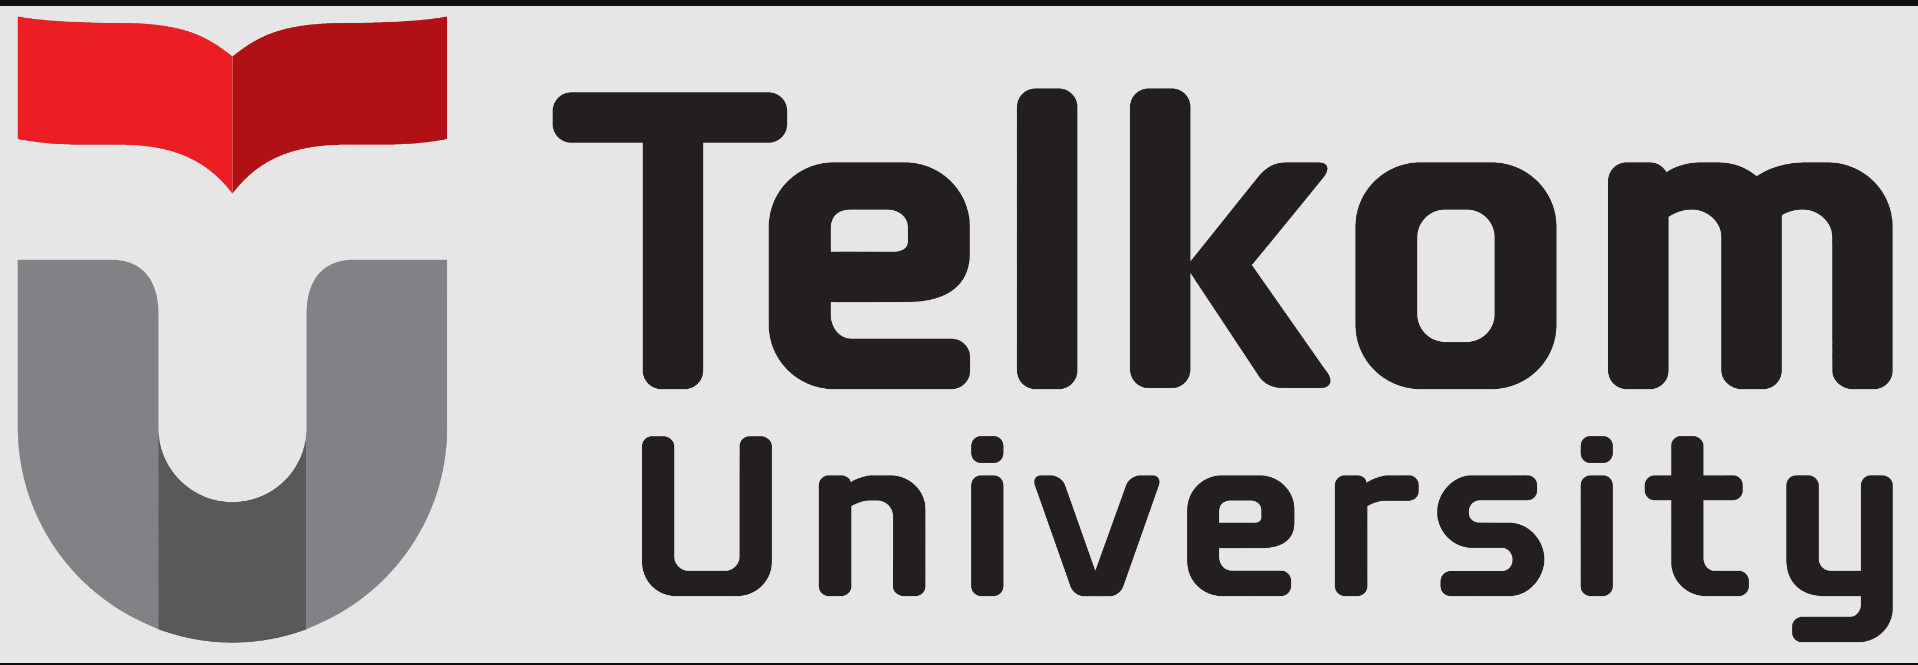 Telkom University mengeluarkan program beasiswa keagamaan yang memungkinkannya mahasiswa dari seluruh agama seperti Islam, Protestan, Katolik, Hindu, Buddha, atau Konghucu